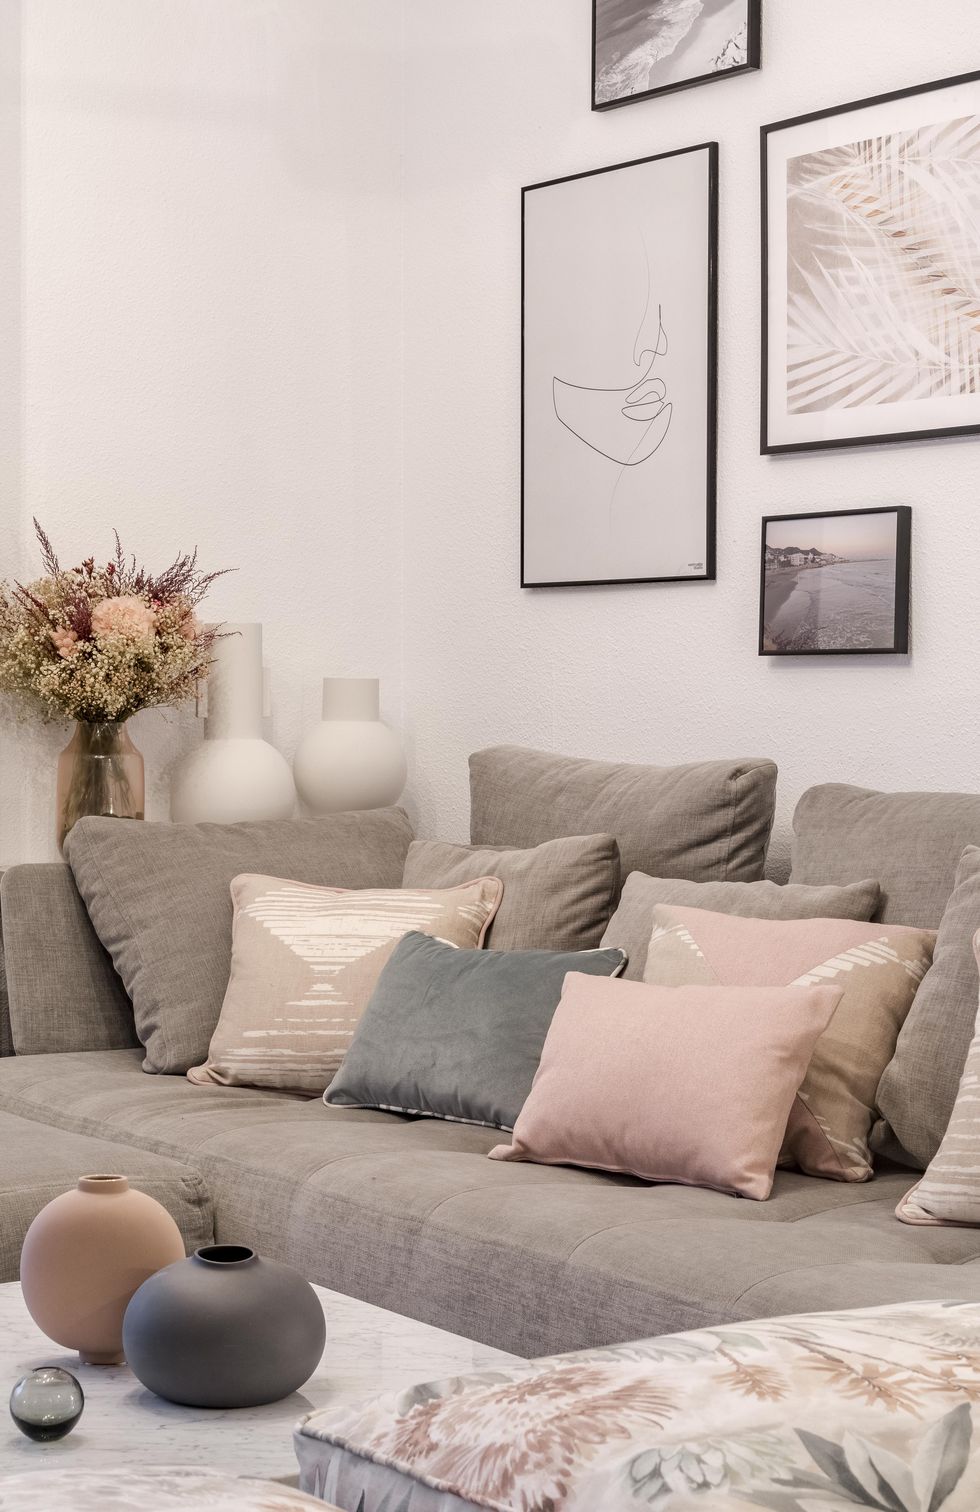 salón de estilo nórdico y boho con sofá gris con chaise longue y cojines en colores pastel